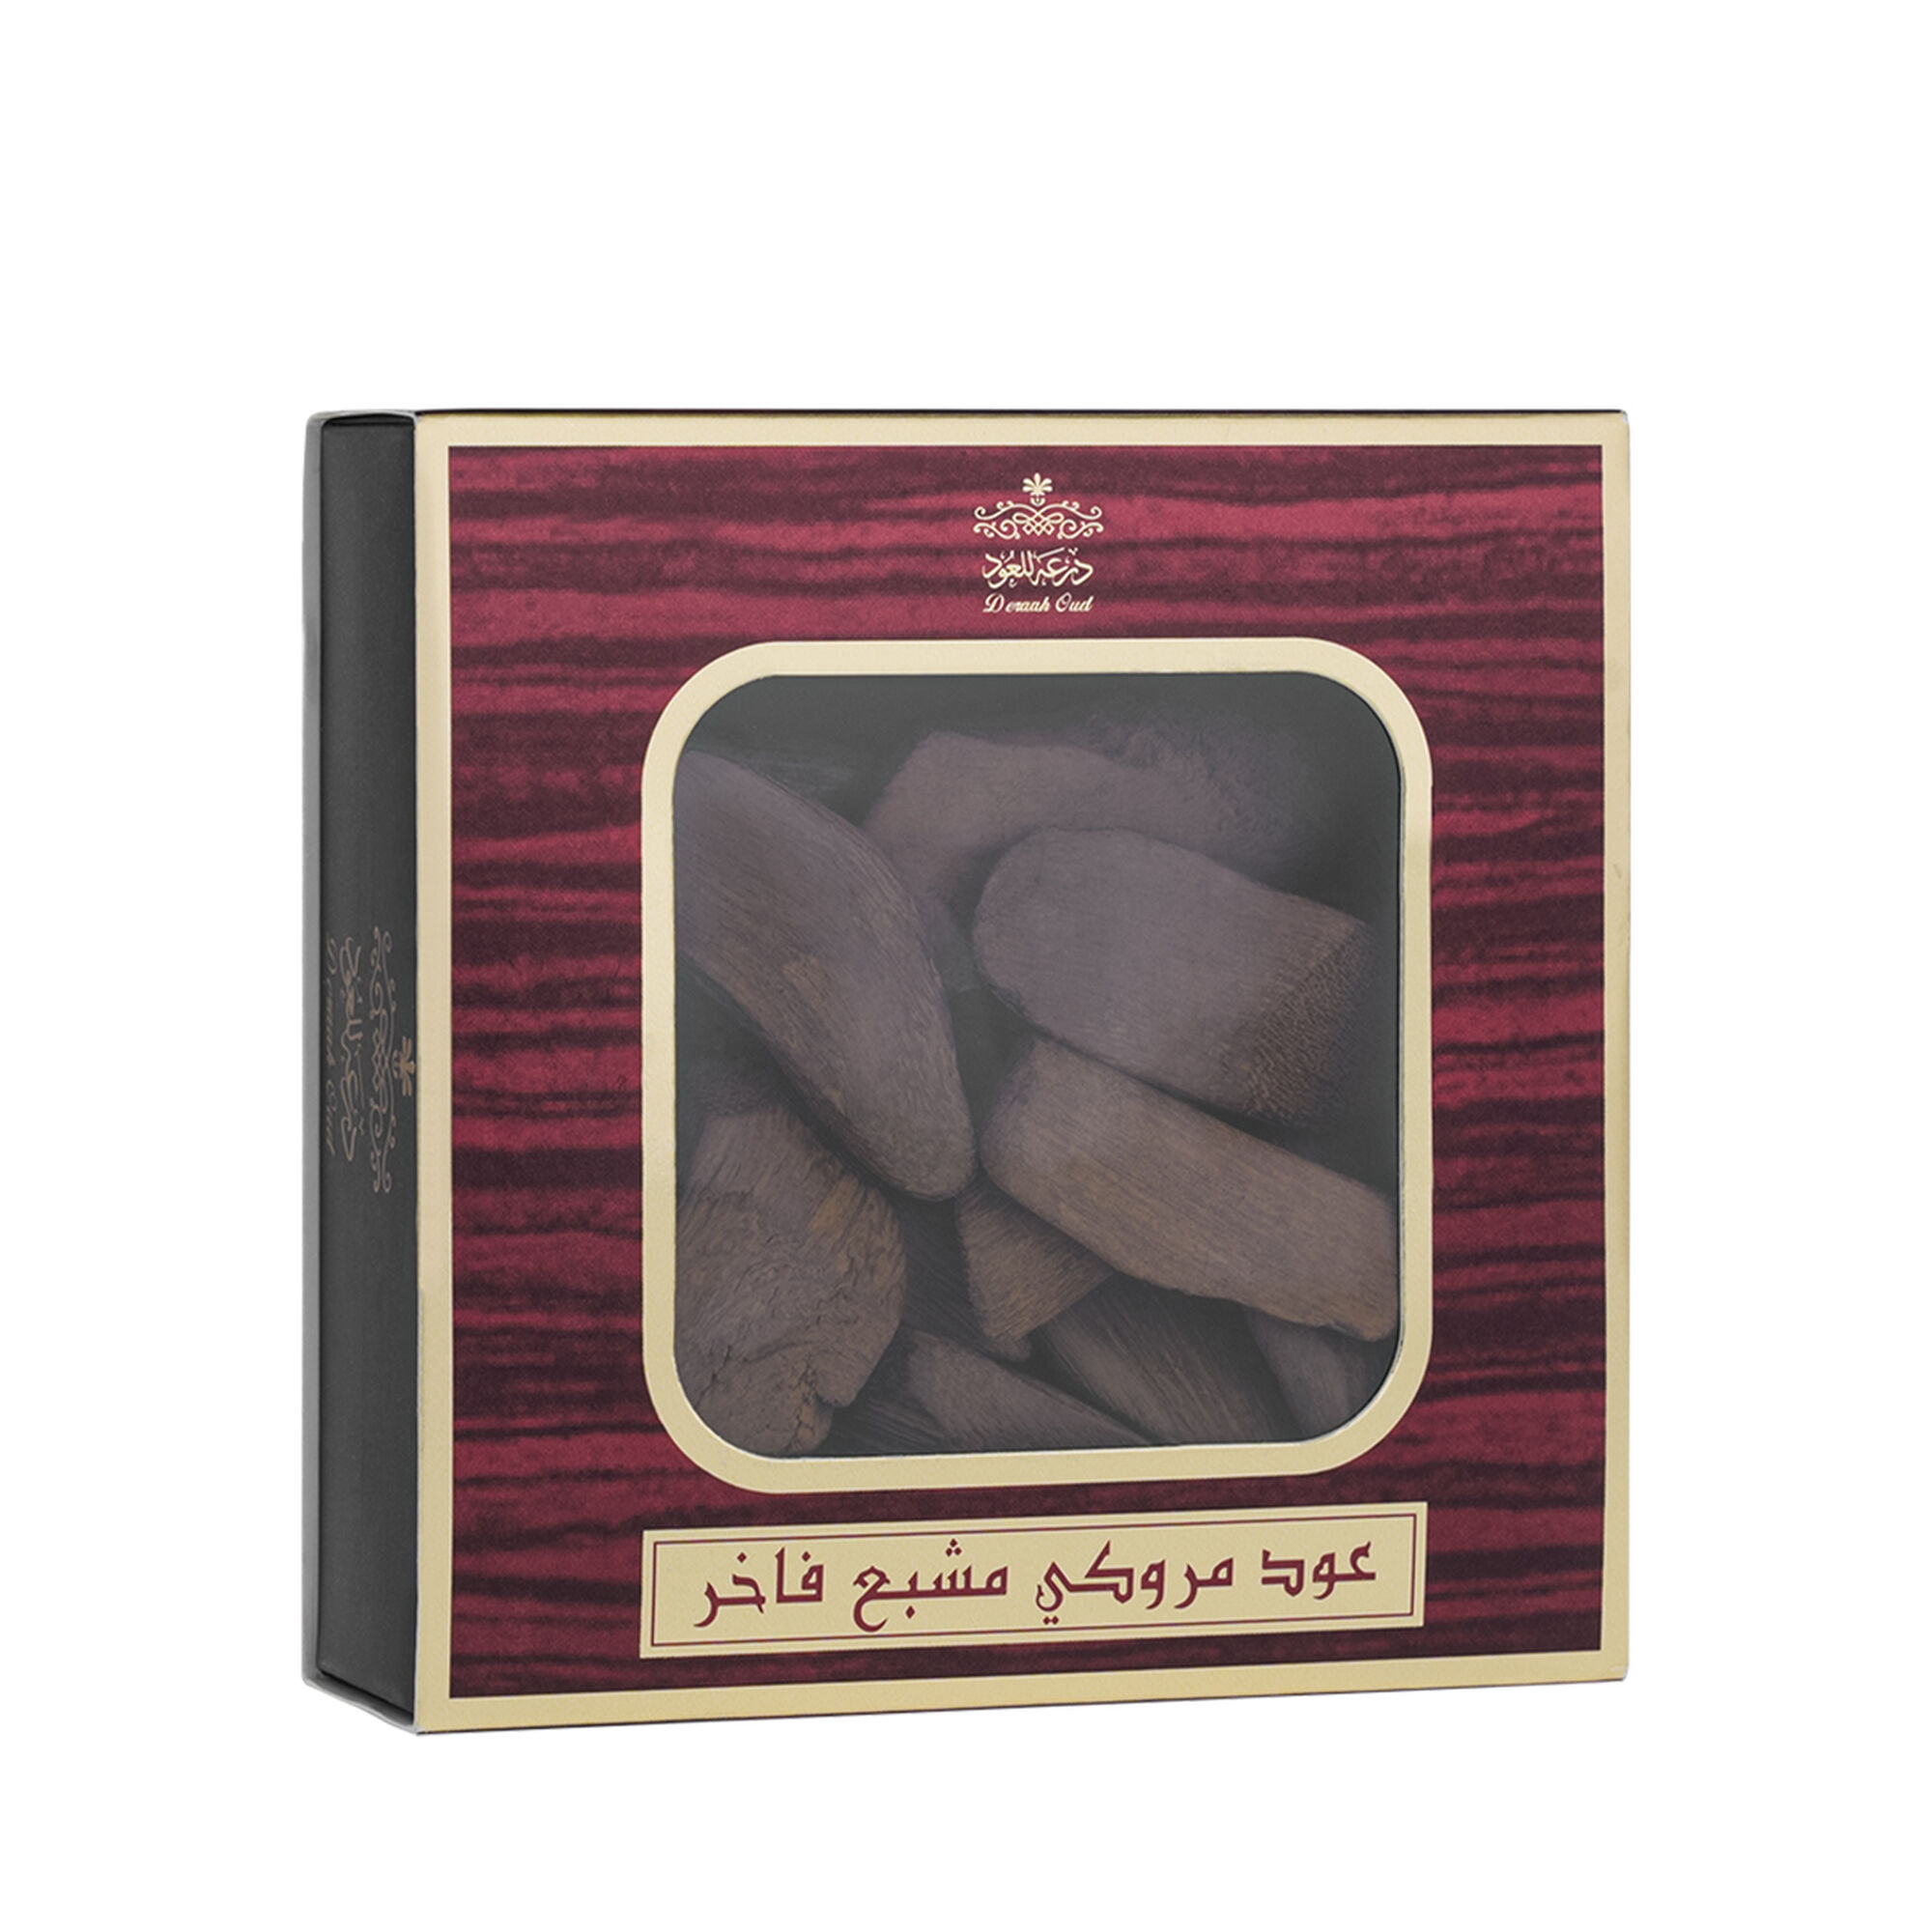 Saturated Marouki Oud packet 56 grams 